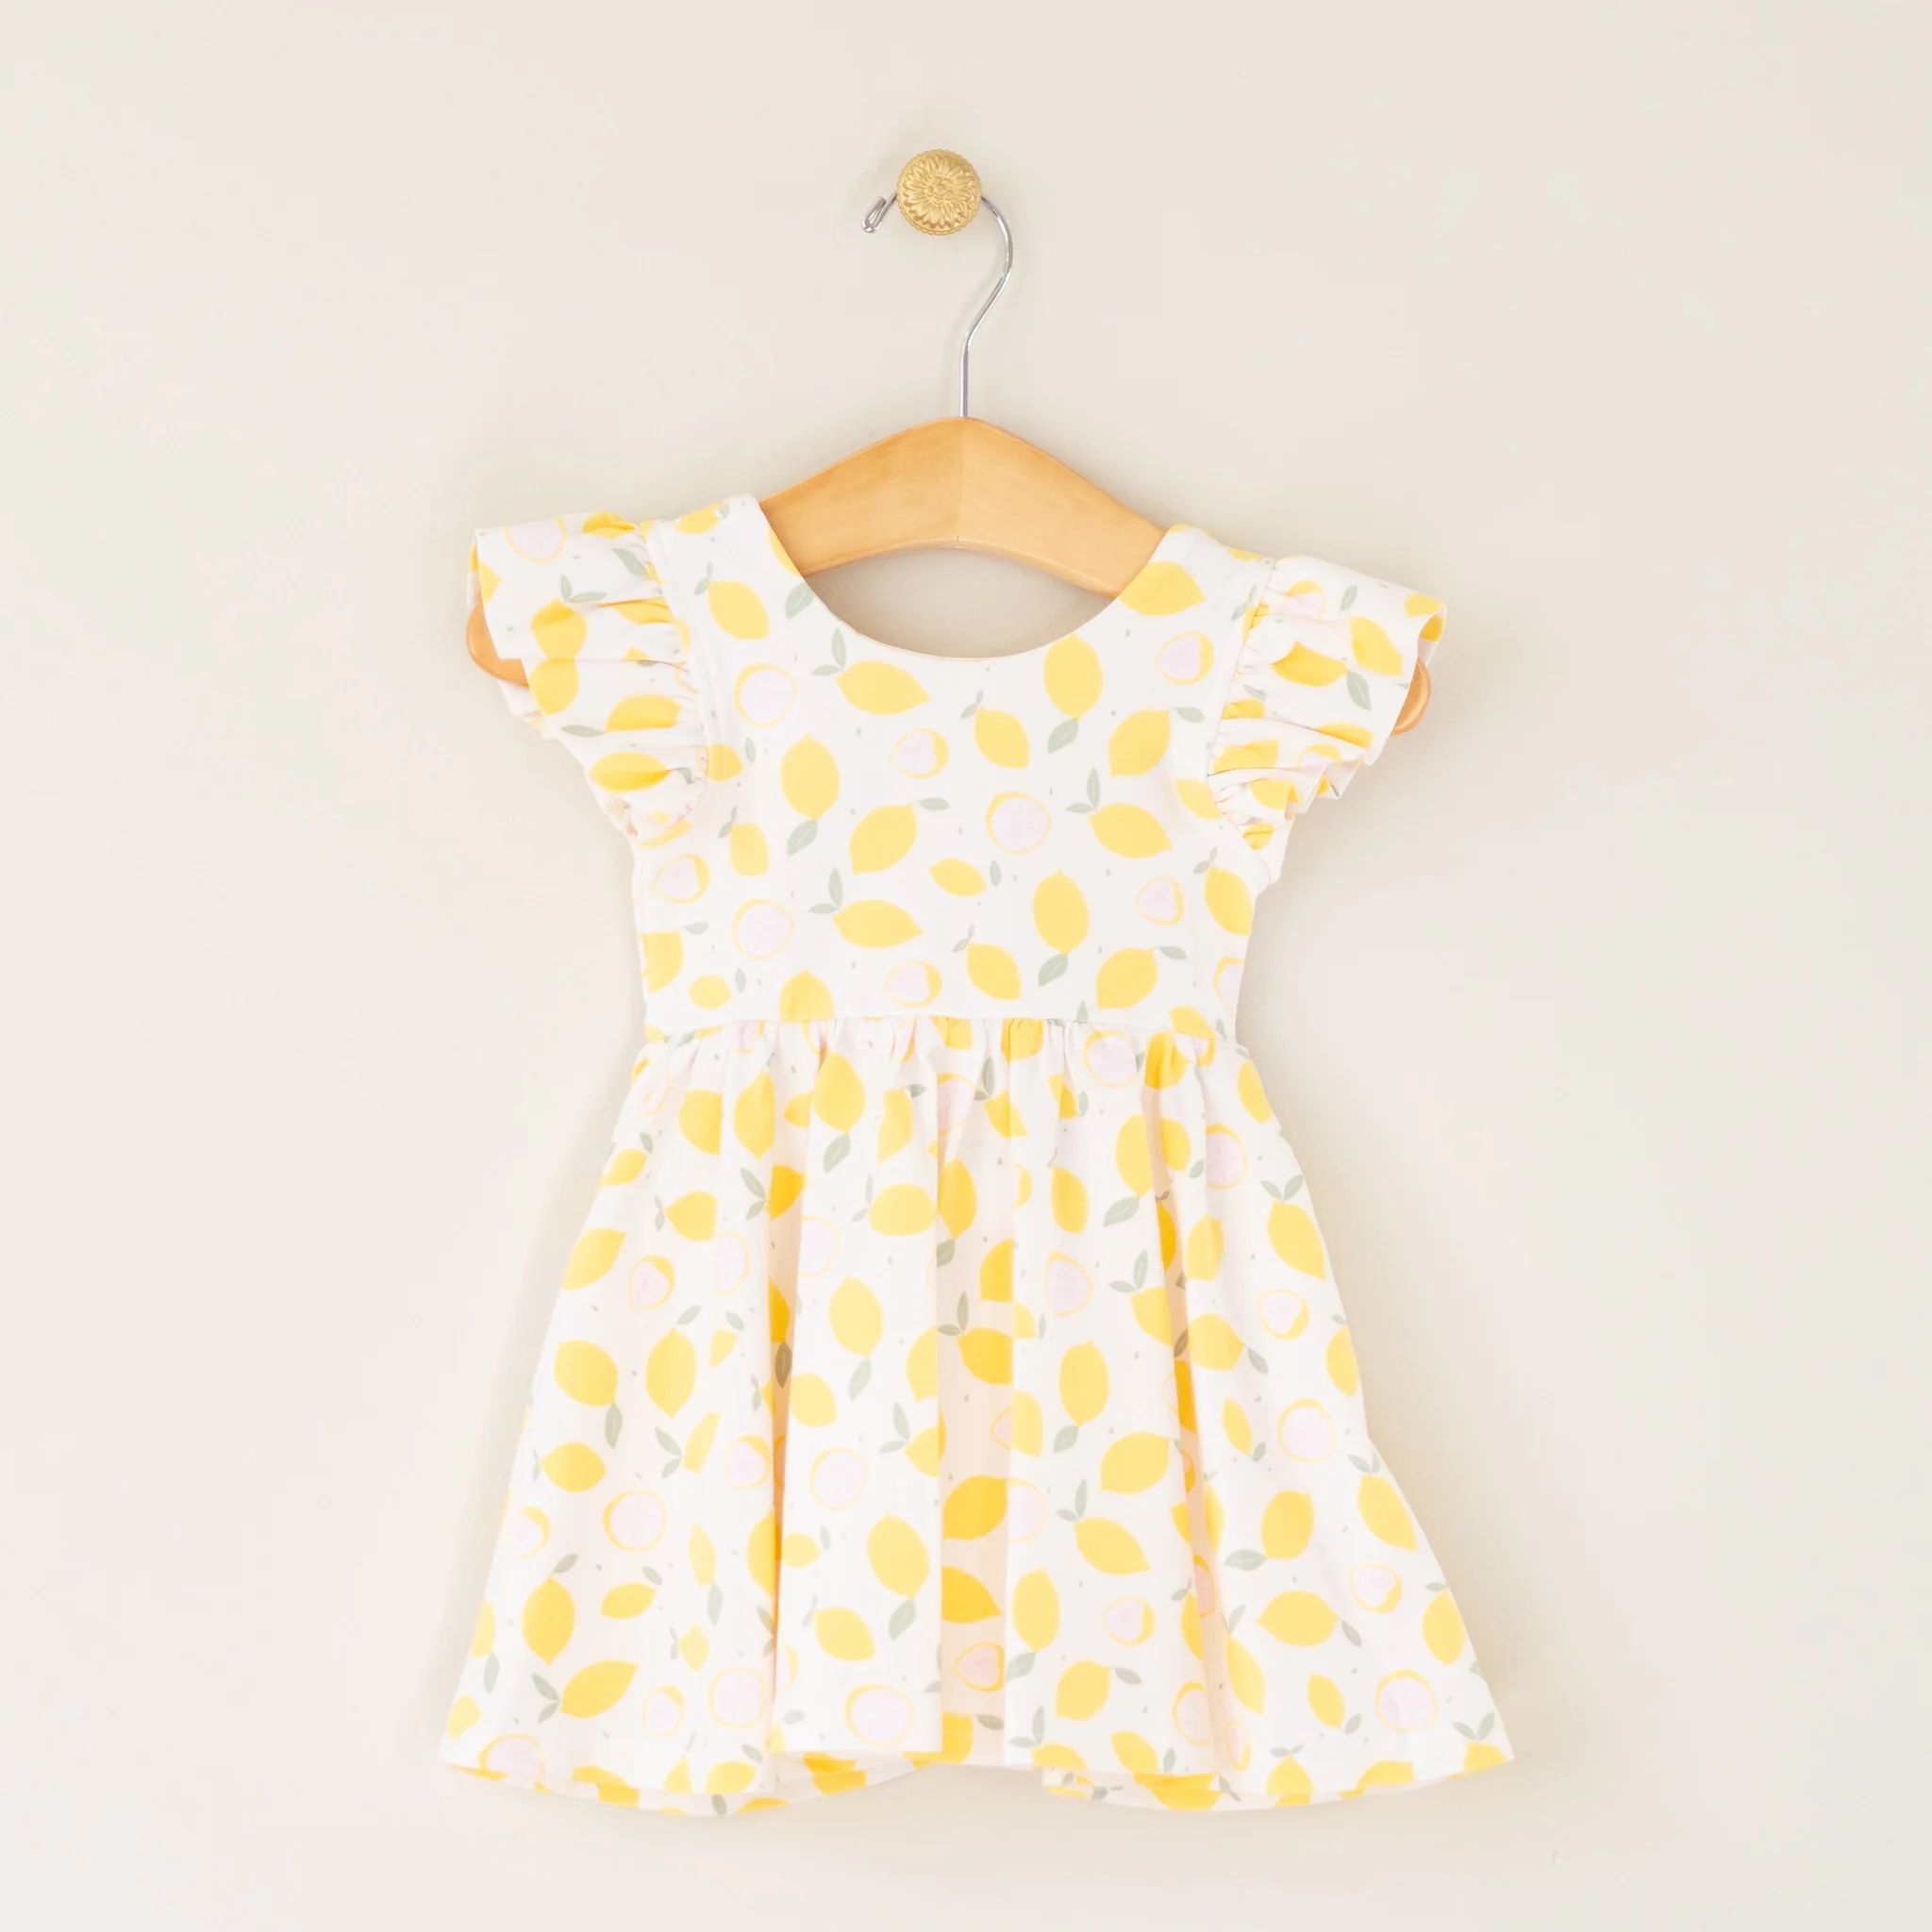 Lemon Drop Knit Infant Dress | Four and Twenty Sailors